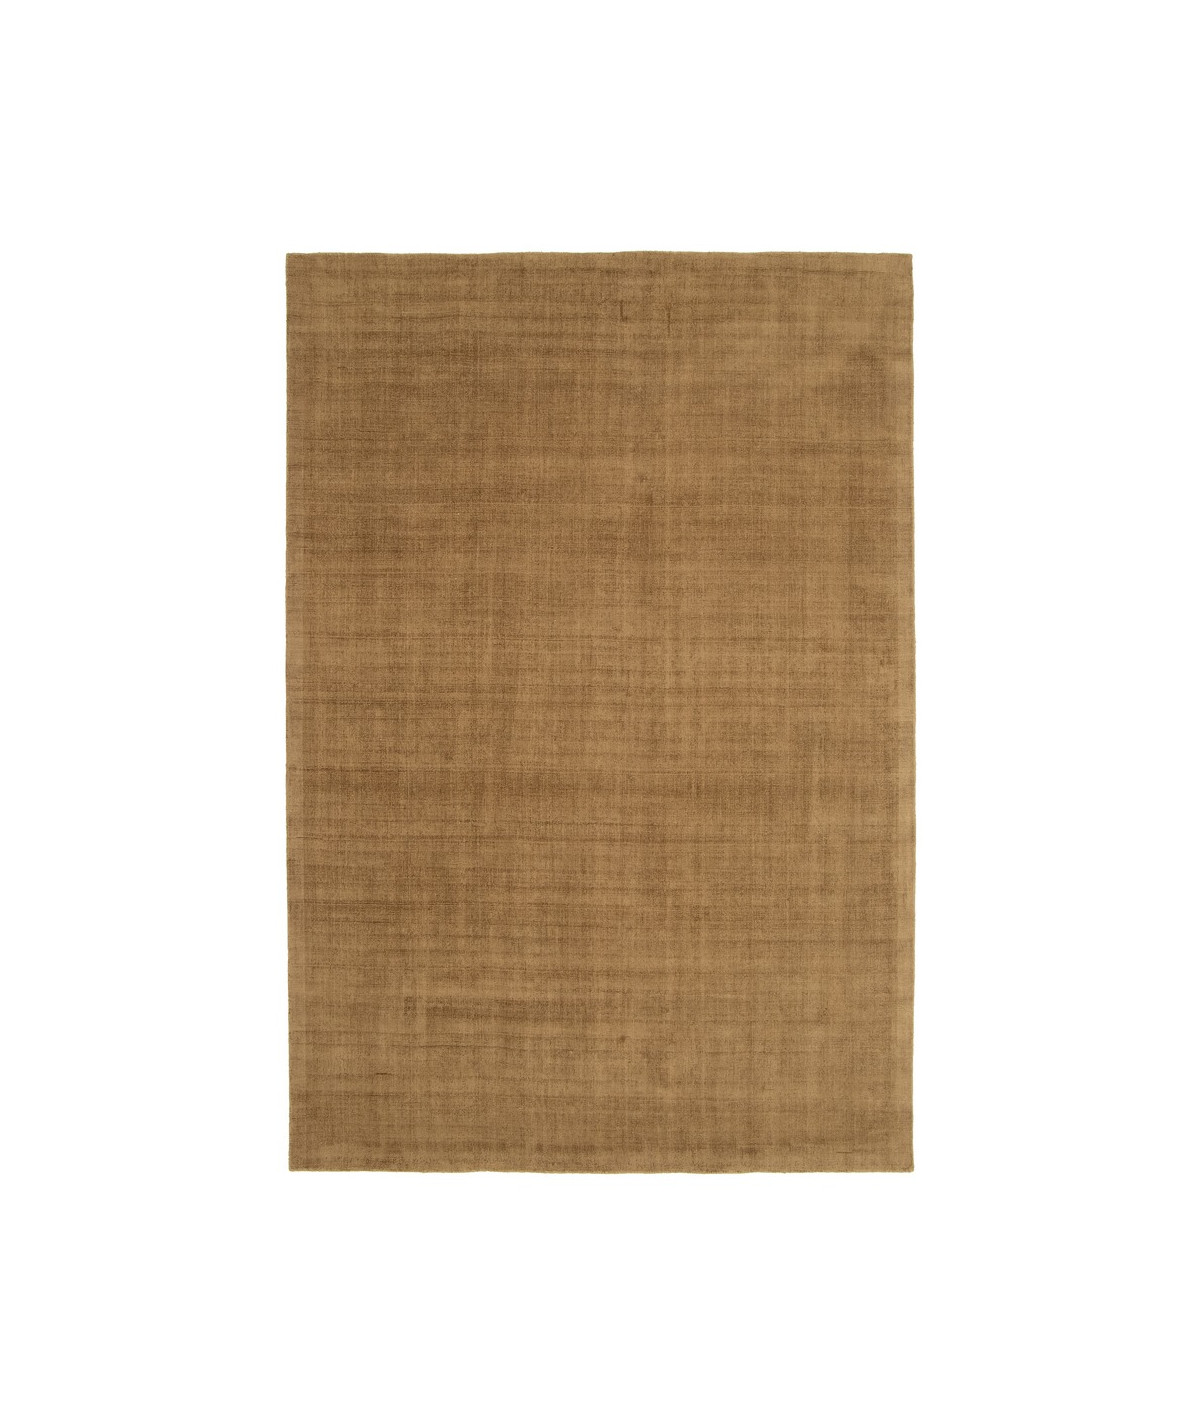 Tapis marron polyester 200x300cm - Bojnourd |YESDEKO